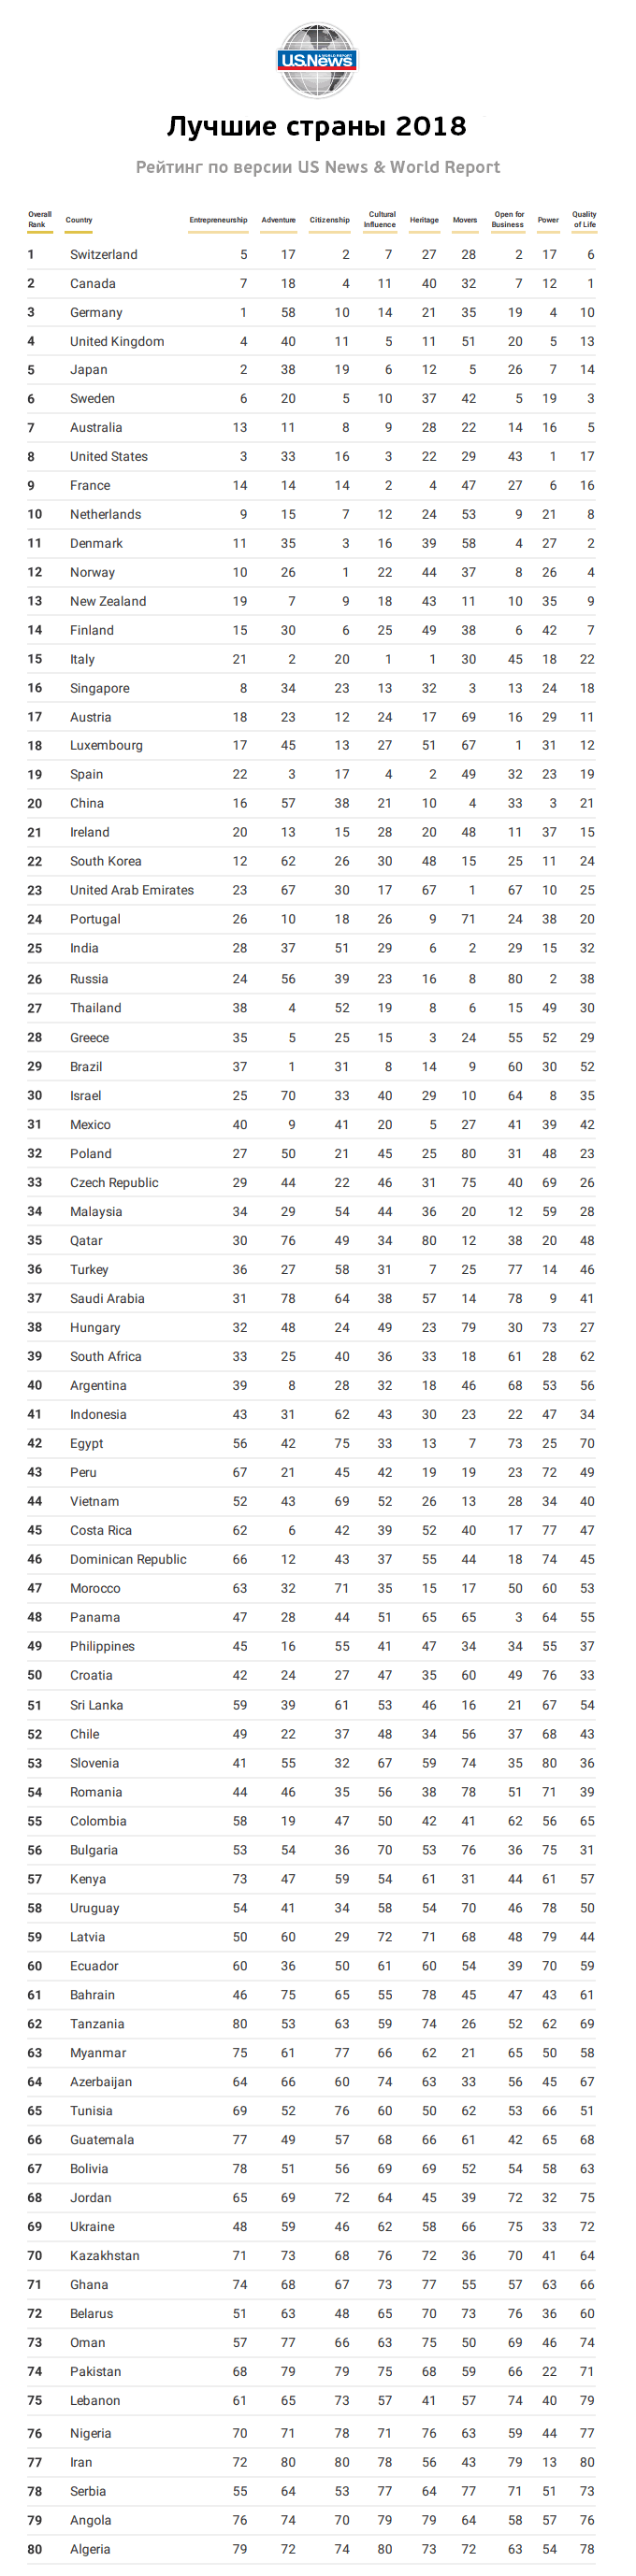 Classifica dei paesi in base alla tabella degli standard di vita 2018, elenco completo